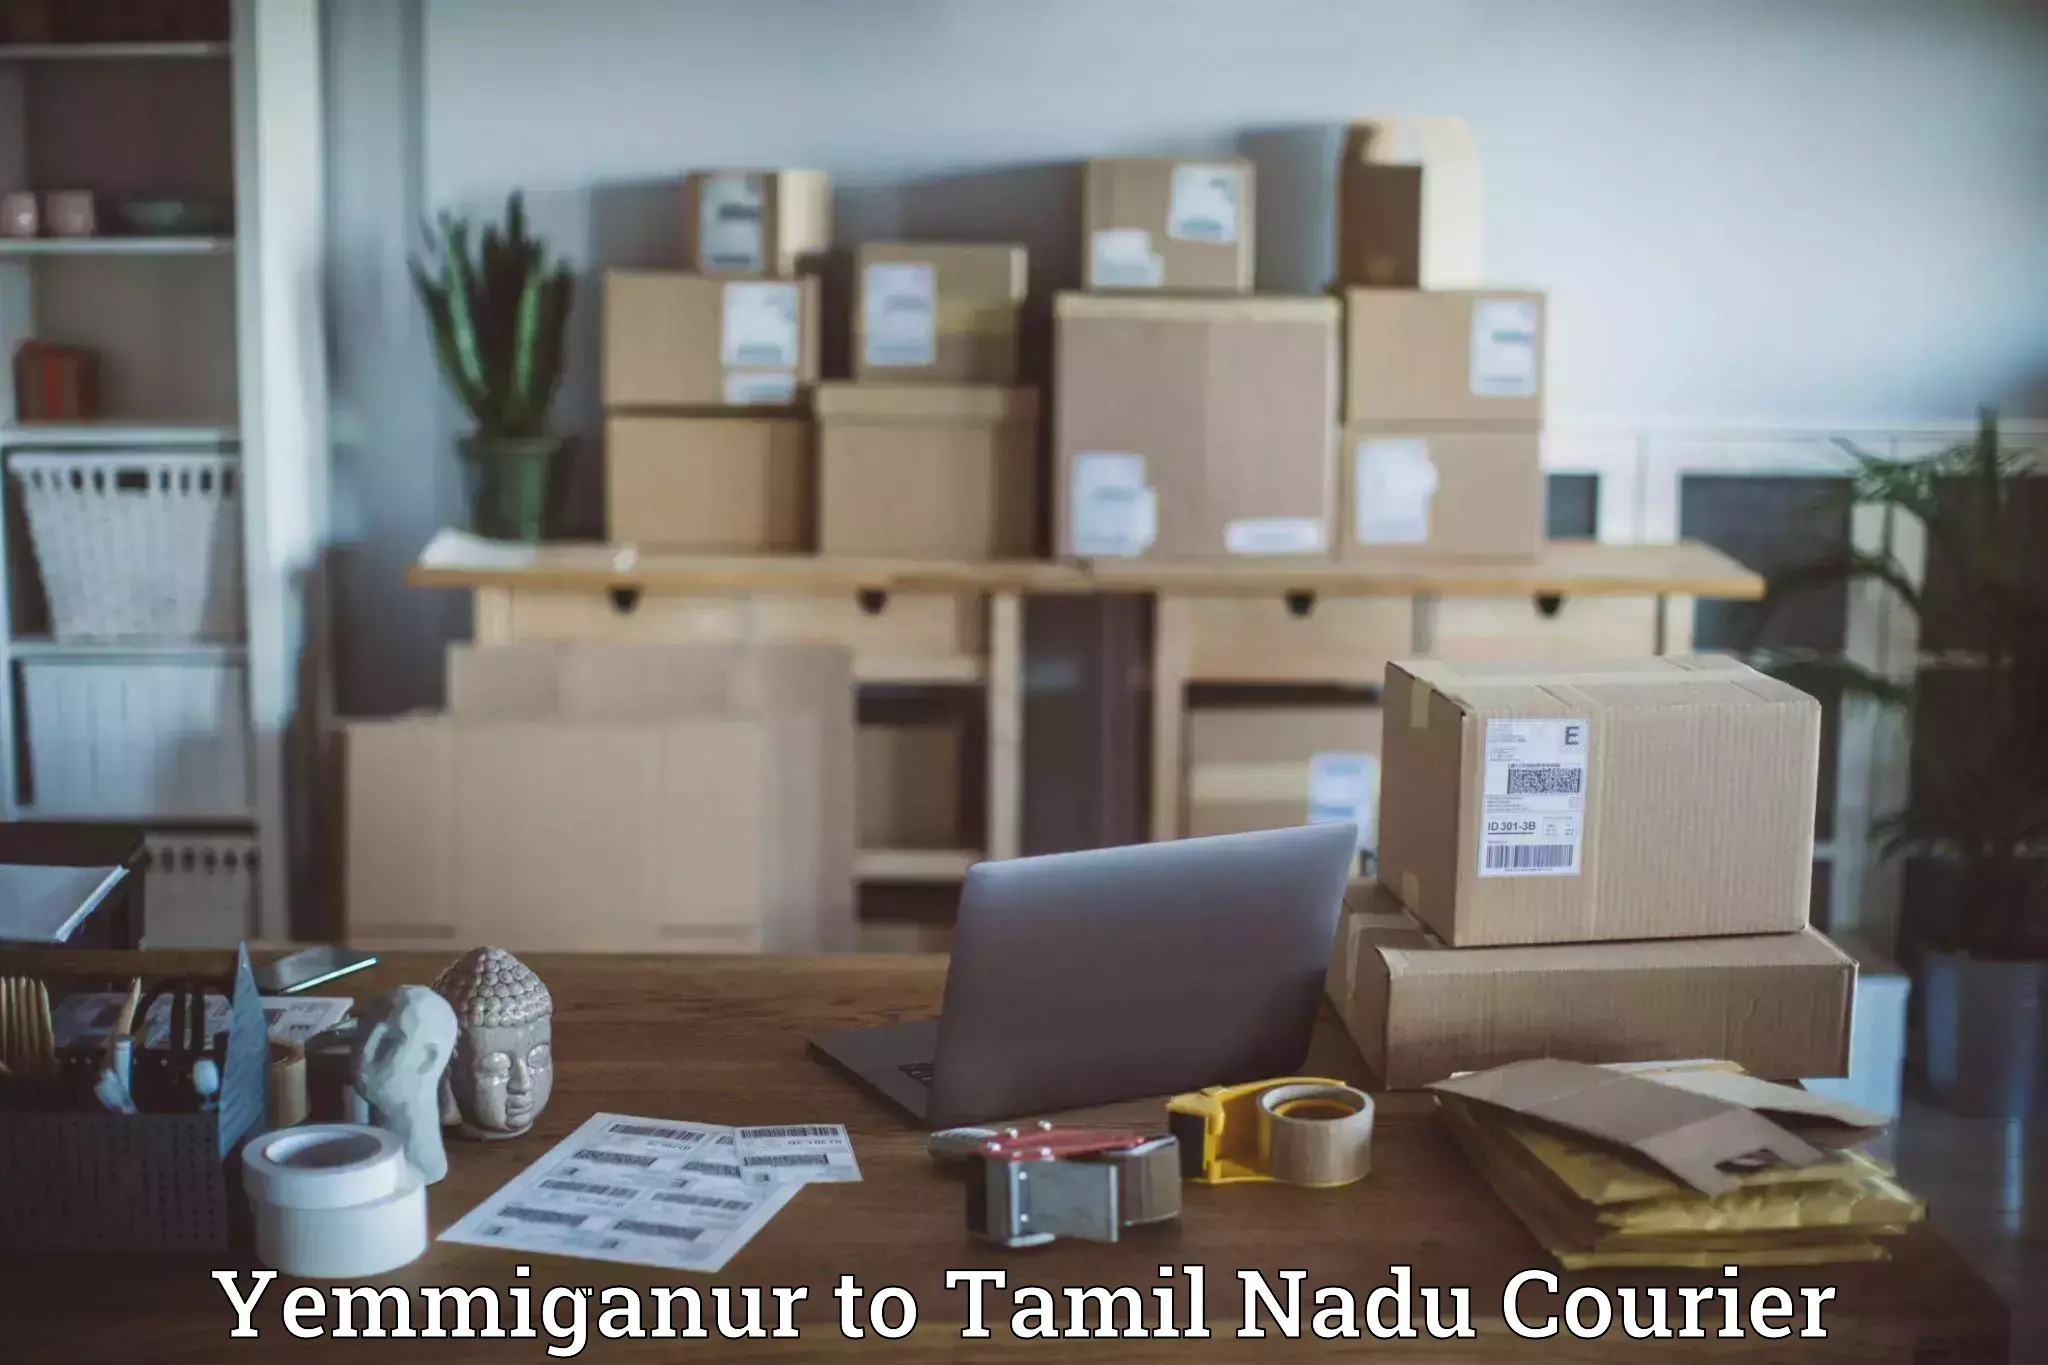 Urgent courier needs Yemmiganur to Ambattur